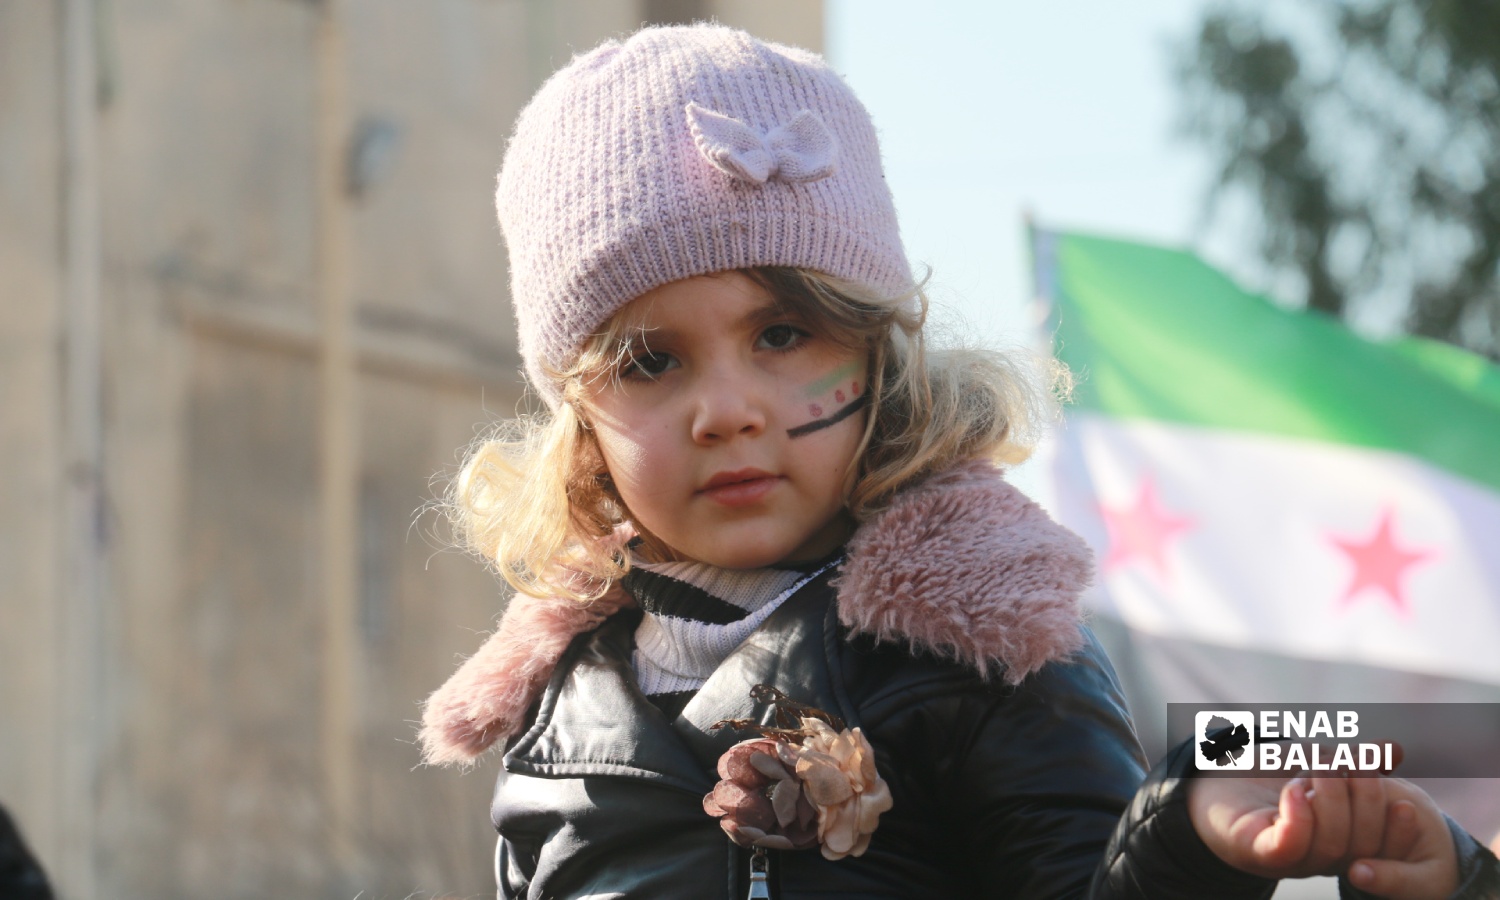 طفلة خلال مظاهرة في مدينة اعزاز بريف حلب الشمالي تنديدًا بالتصريحات التركية حول التقارب مع النظام السوري وتأكيدًا على استمرار الثورة السورية- 30 من كانون الأول 2022 (عنب بلدي/ ديان جنباز)